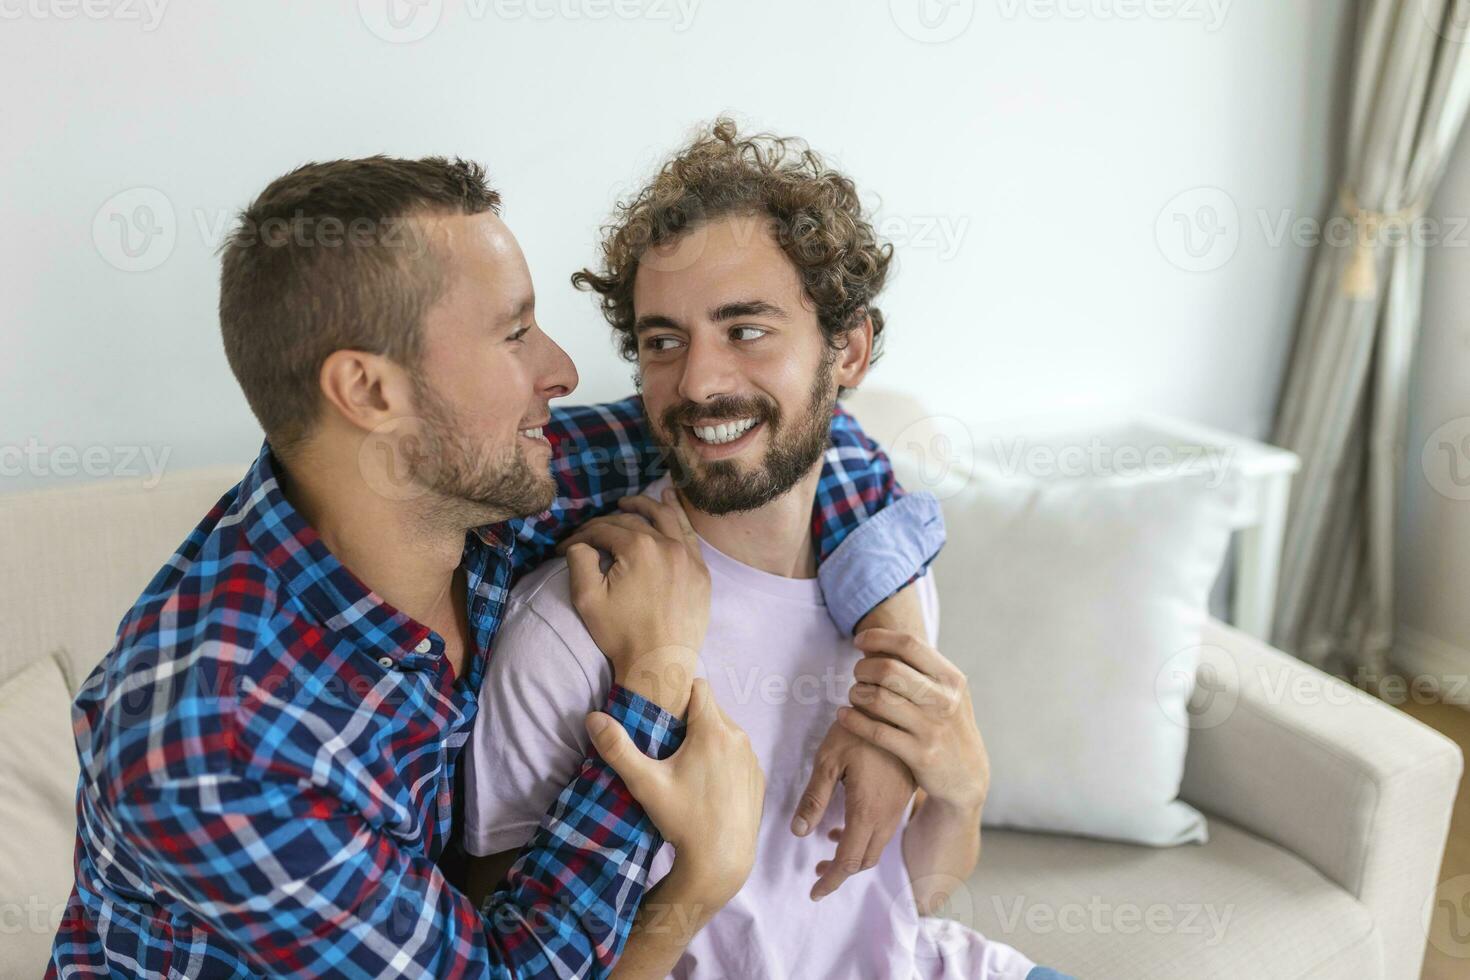 alegre joven gay Pareja sentado juntos. dos cariñoso masculino amantes sonriente alegremente mientras abrazando cada otro. joven gay cupé siendo romántico. foto